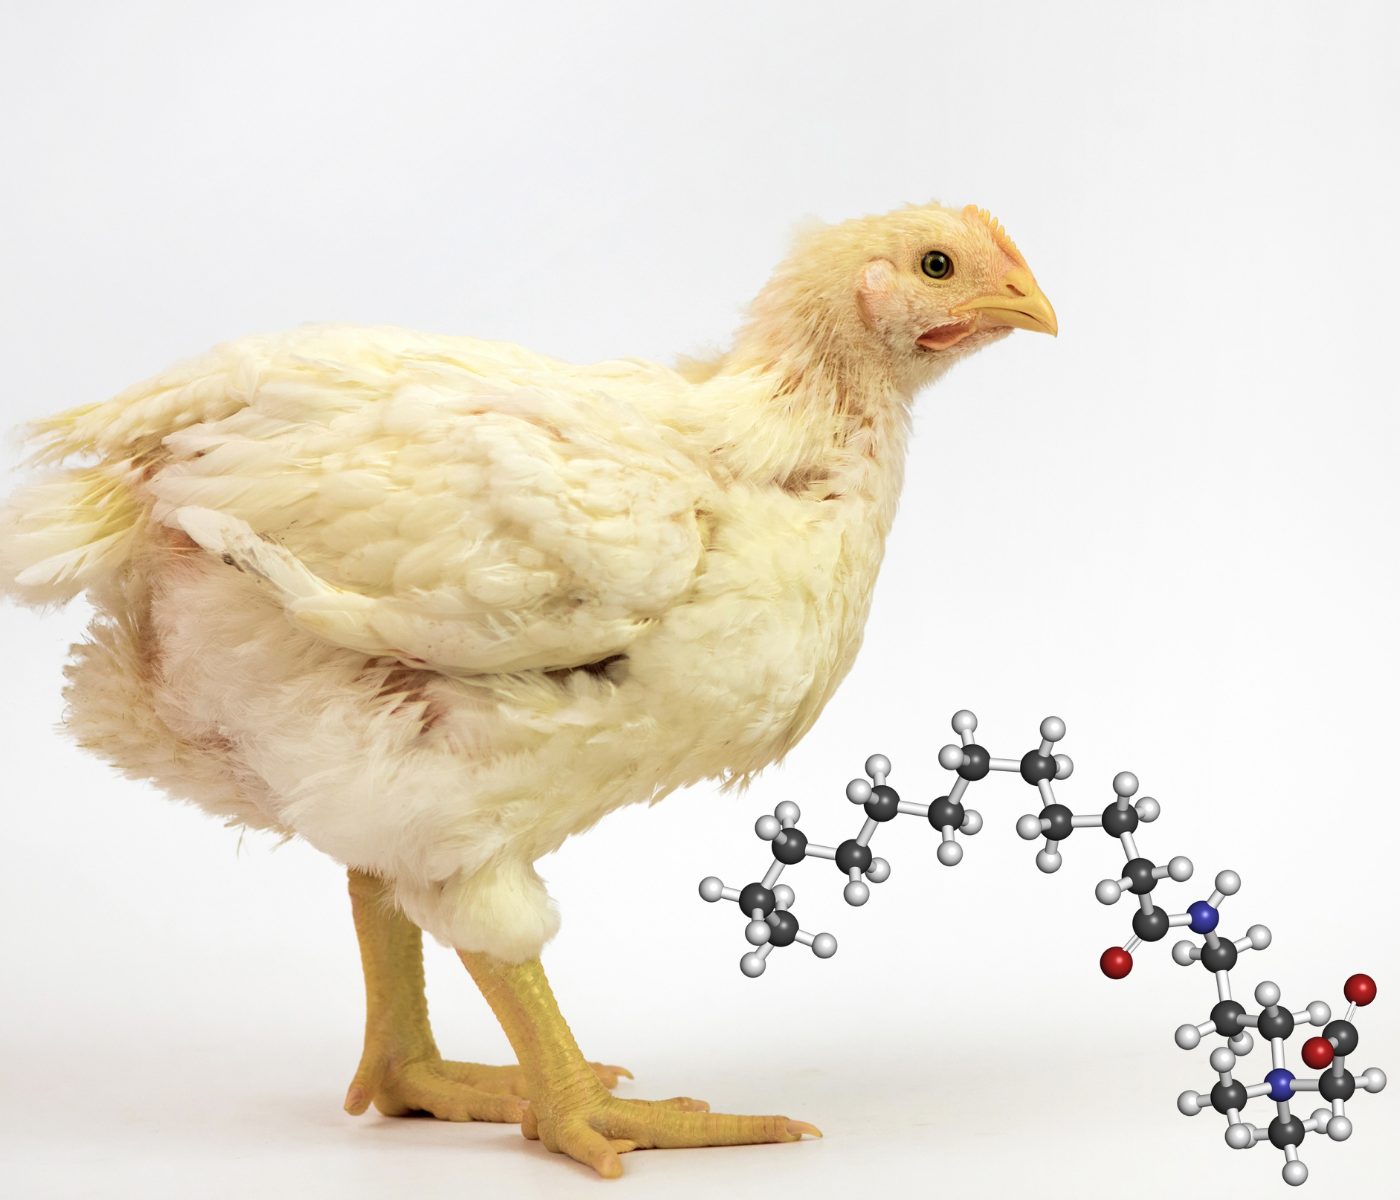 Uso de betaína en las dietas de pollos de engorde